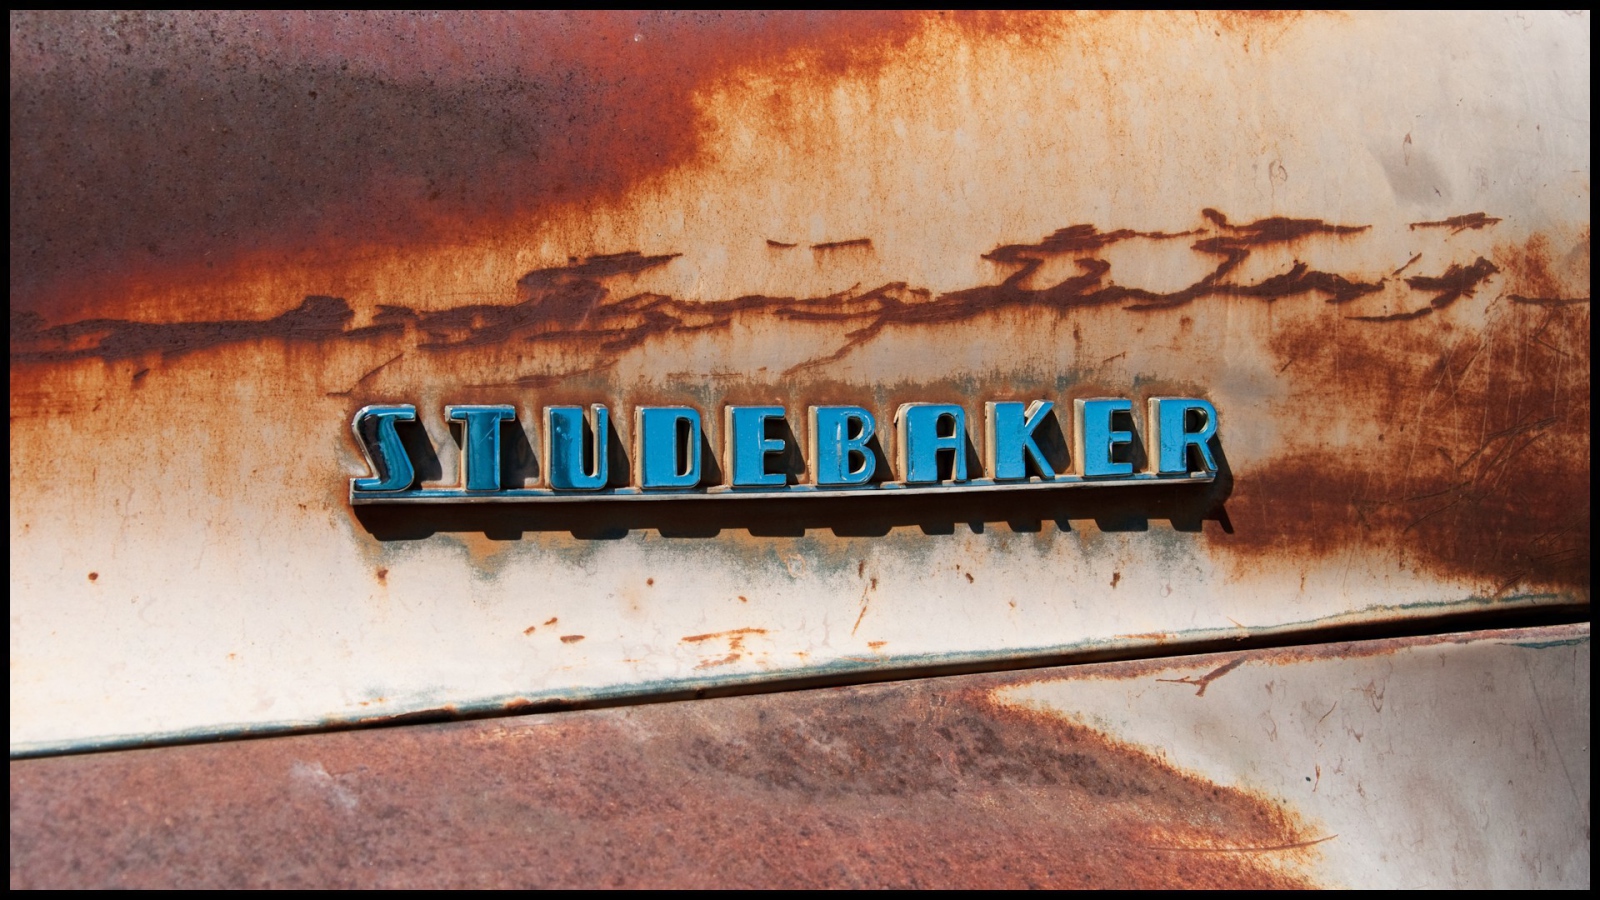 Логотип автомобилей Studebaker